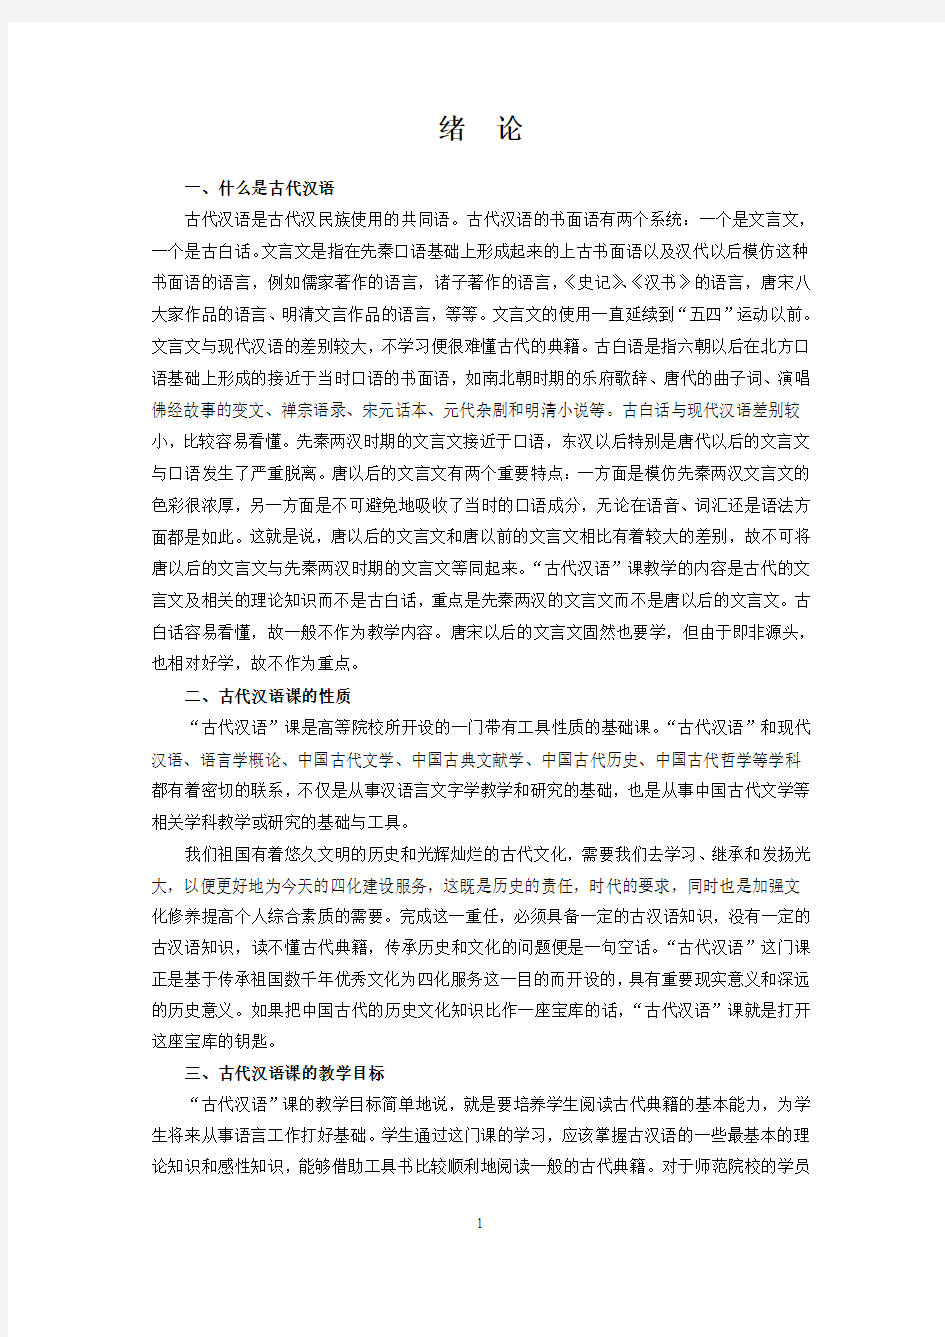 古代汉语教案胡安顺陕师大内部资料